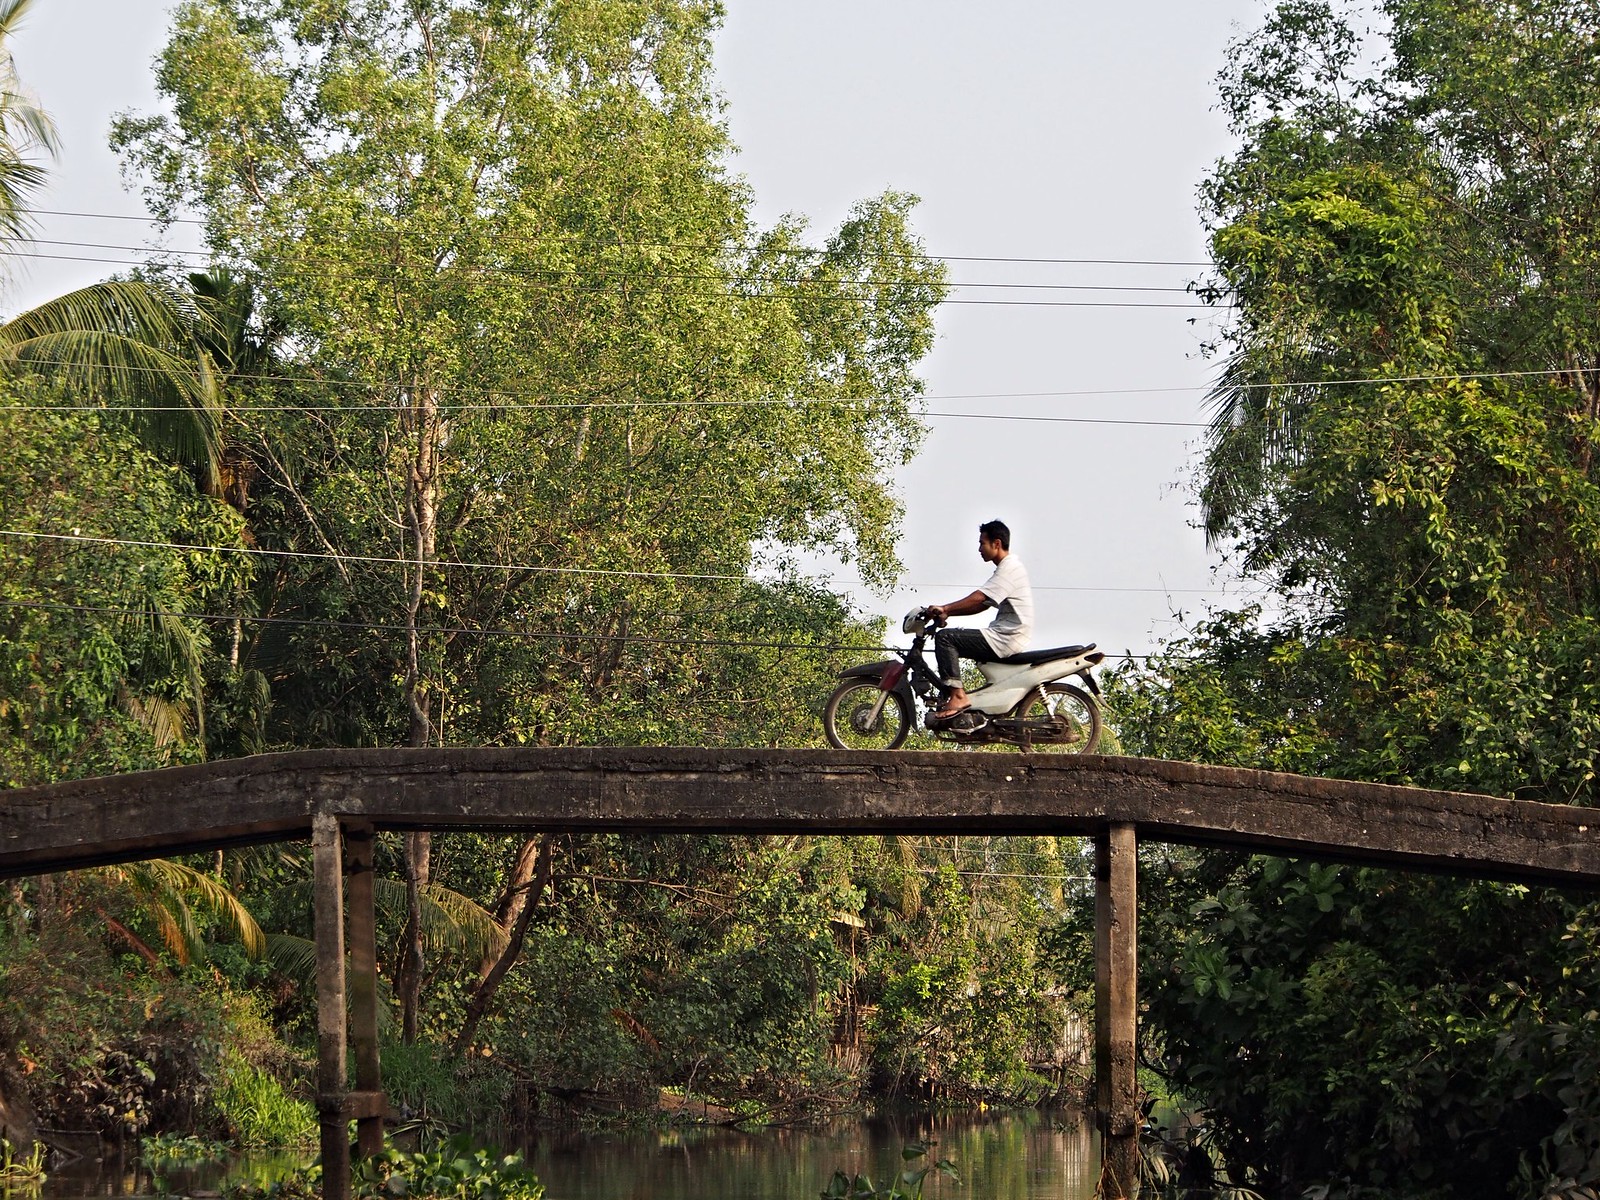  Mekongjoki